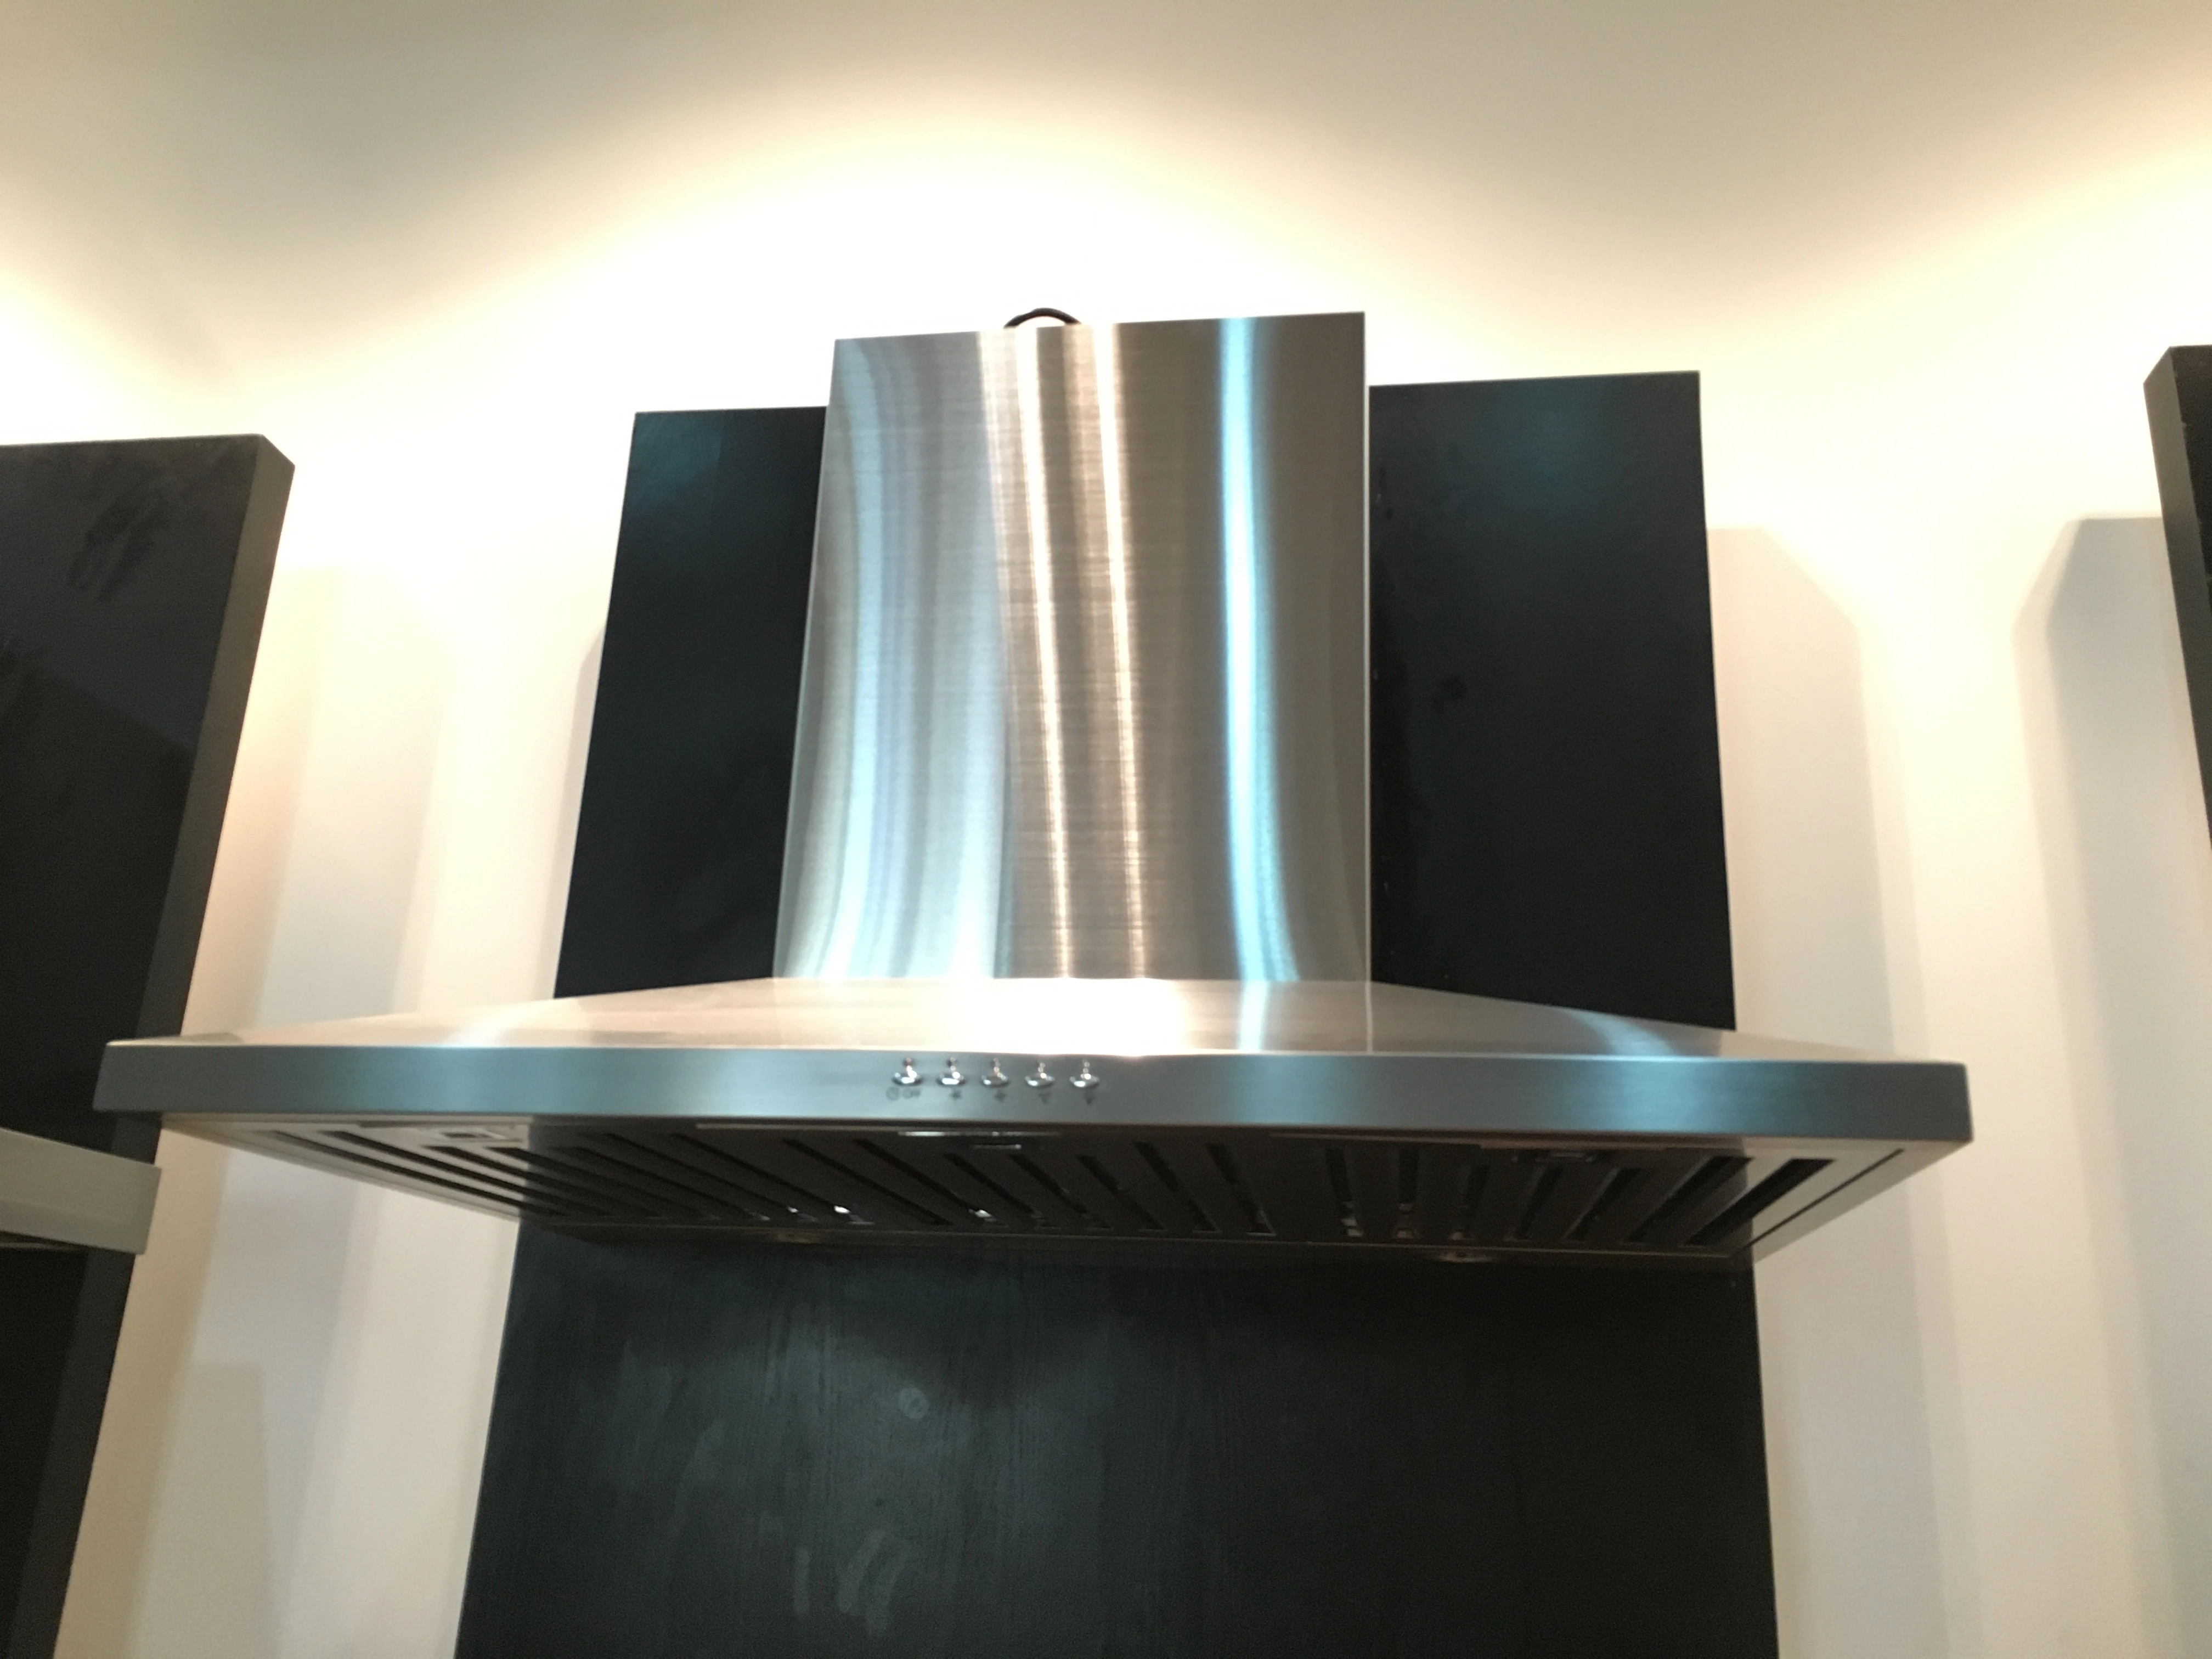 SENG stainless steel wall mounted kitchen range hood